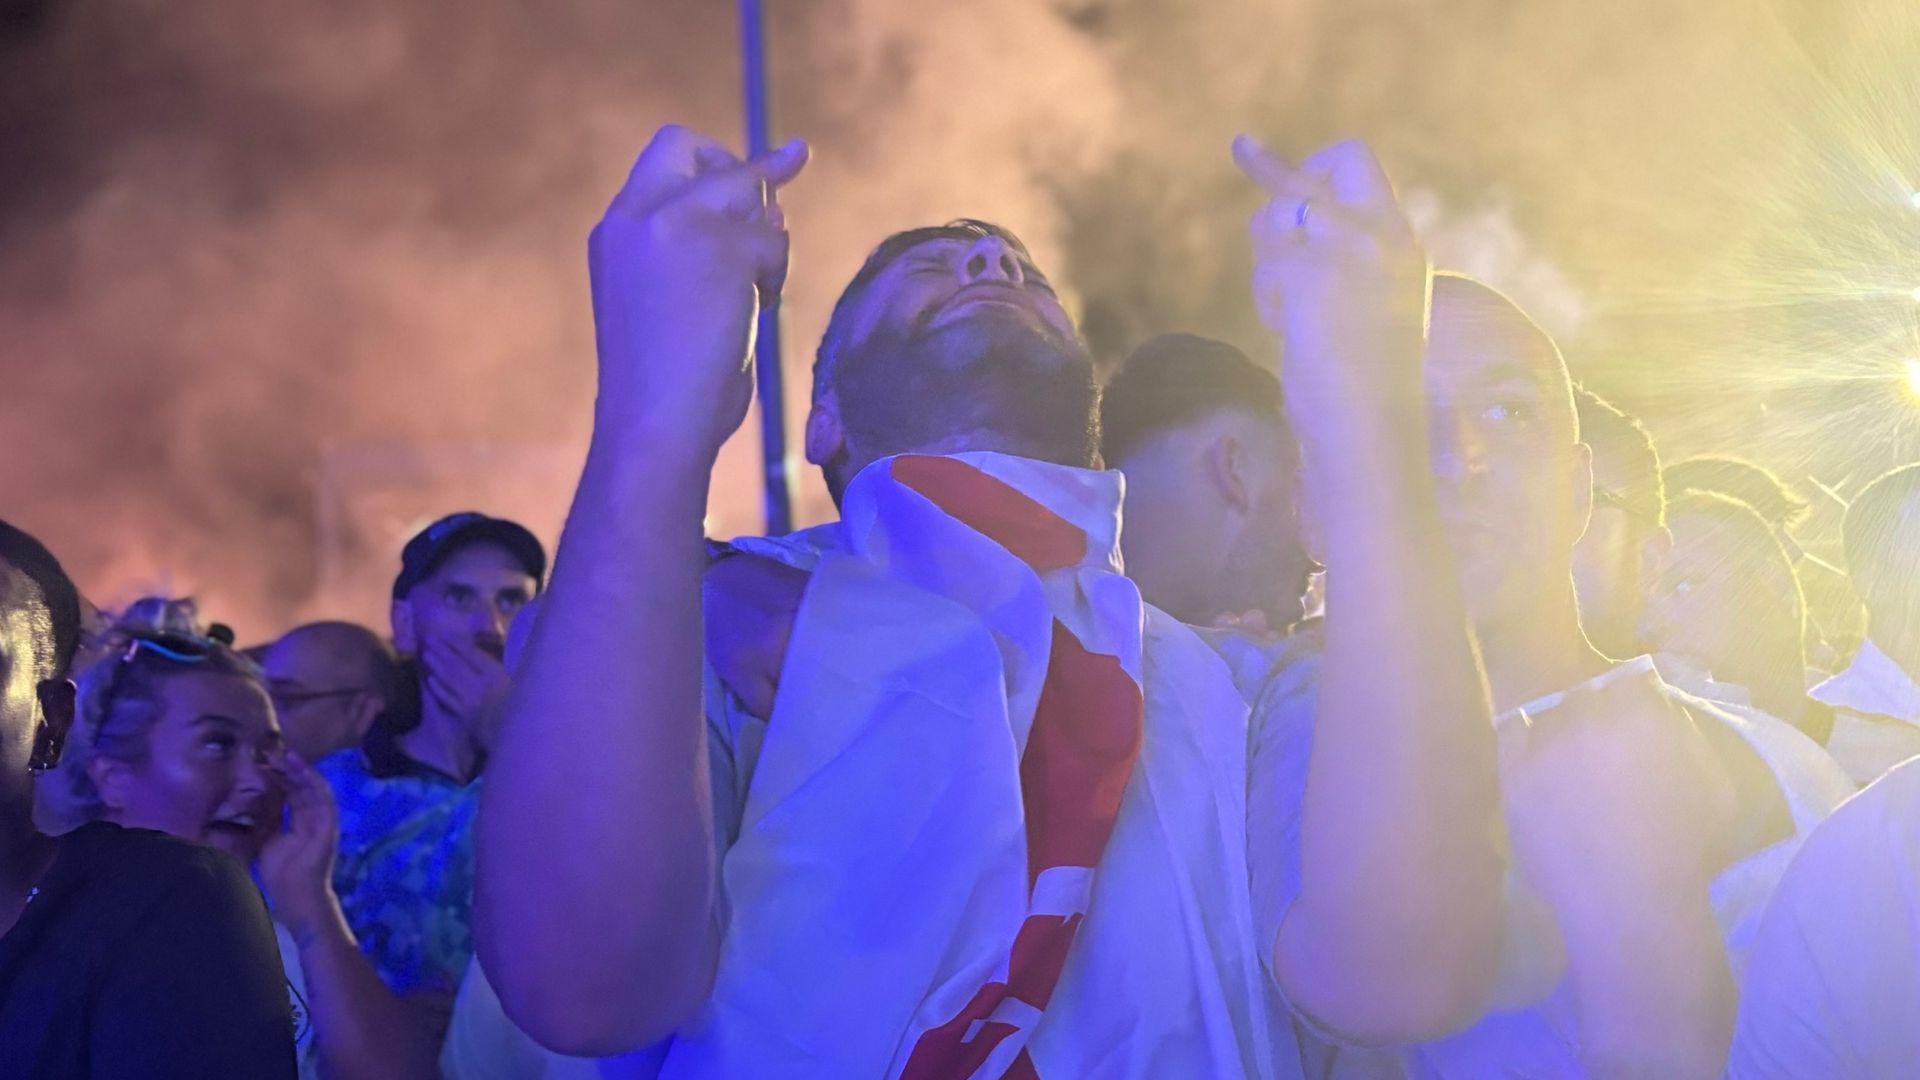 In Berlin's fan zones, England fans sang out until Euro 2024 hope turned to heartbreak